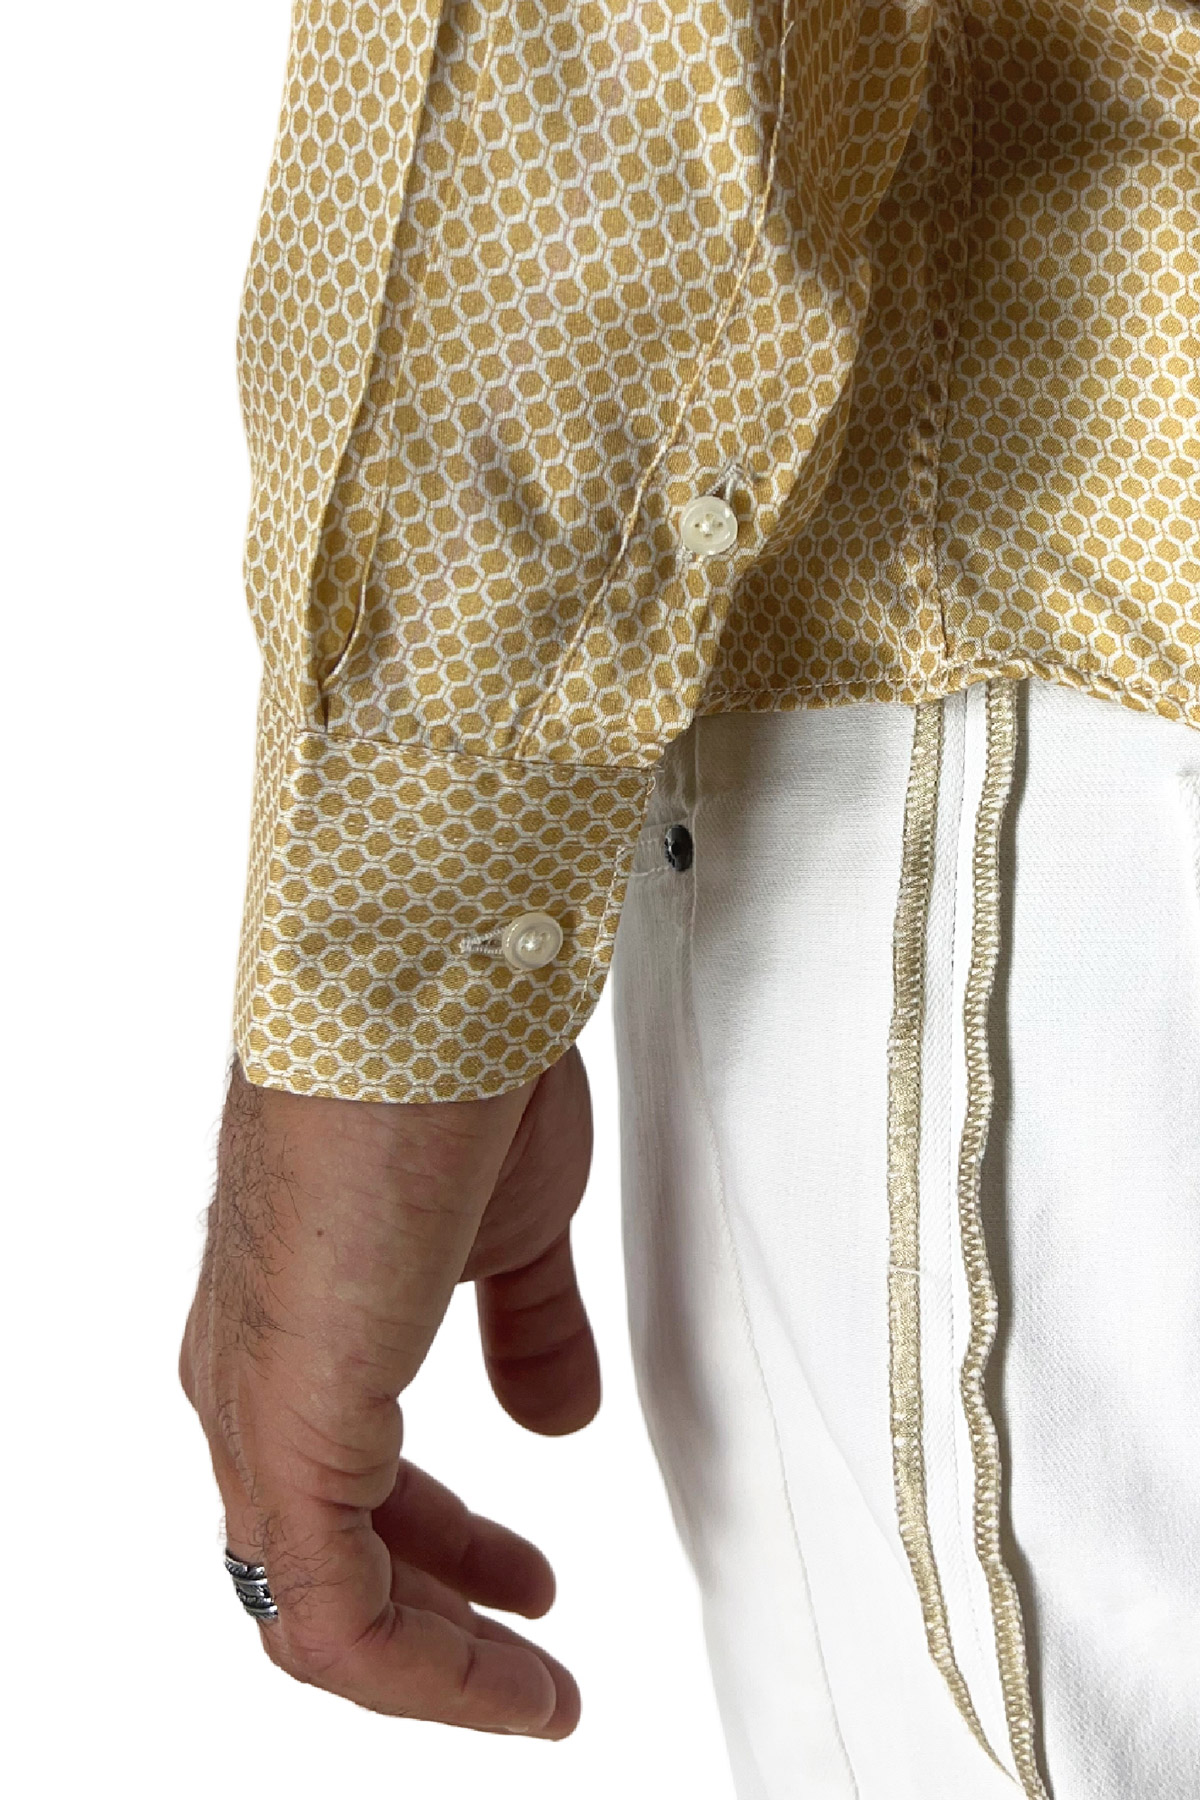 Camicia Uomo In Viscosa fantasia esagonale beige vestibilita comoda Collo Italiano